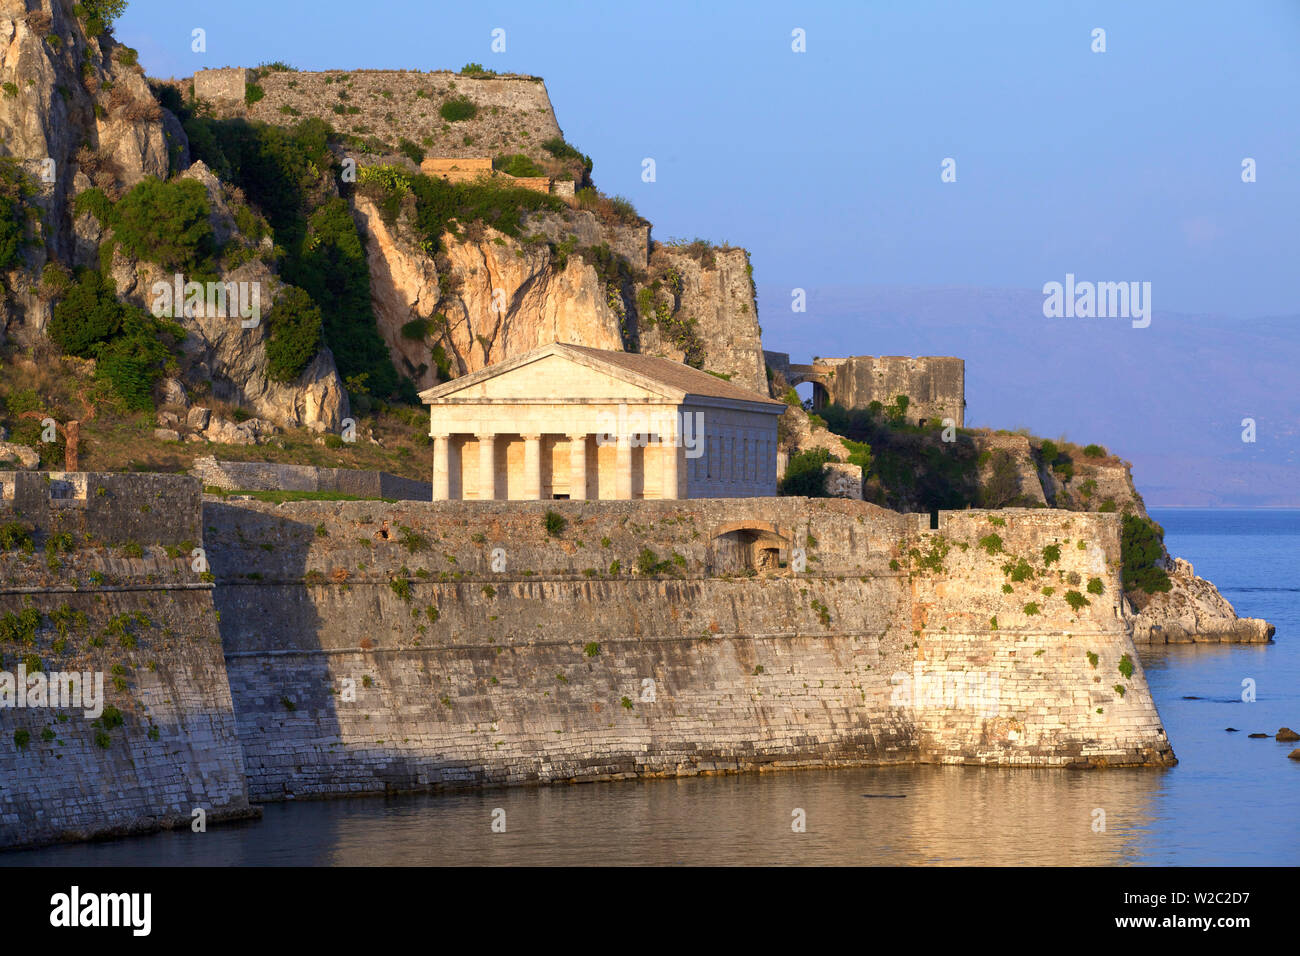 Le vieux fort et l'église de Saint George, vieille ville de Corfou, Corfou, îles Ioniennes, îles grecques, Grèce, Europe Banque D'Images